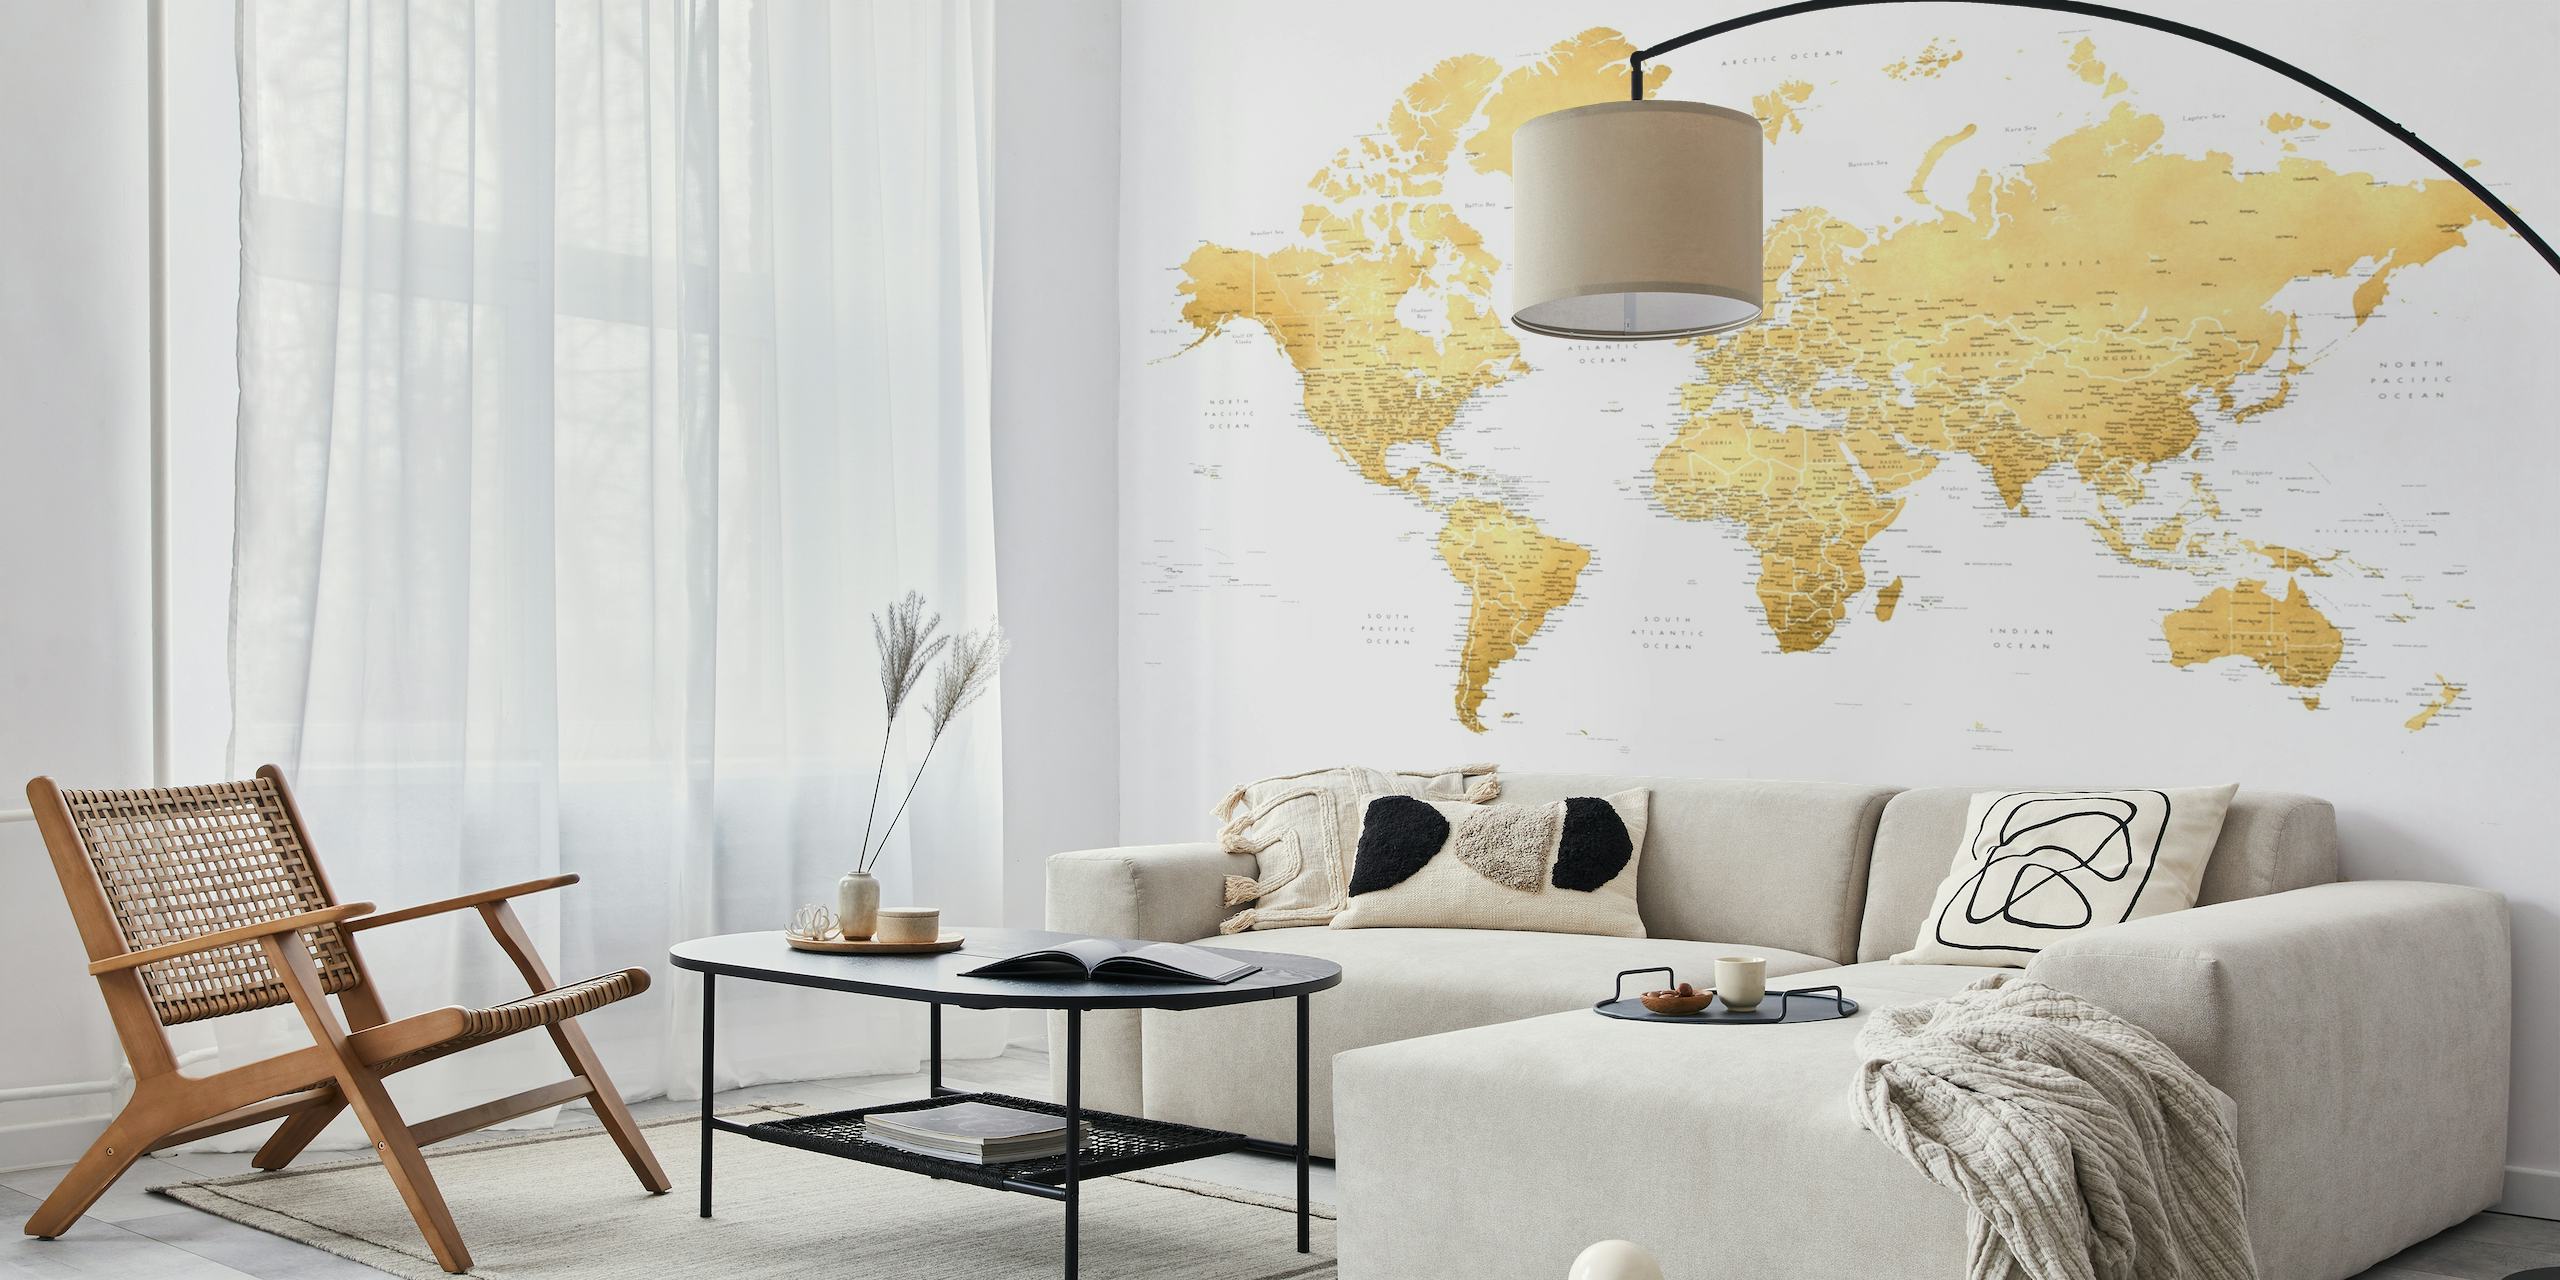 Elegante wereldkaart muurschildering met gouden accenten gericht op Antarctica